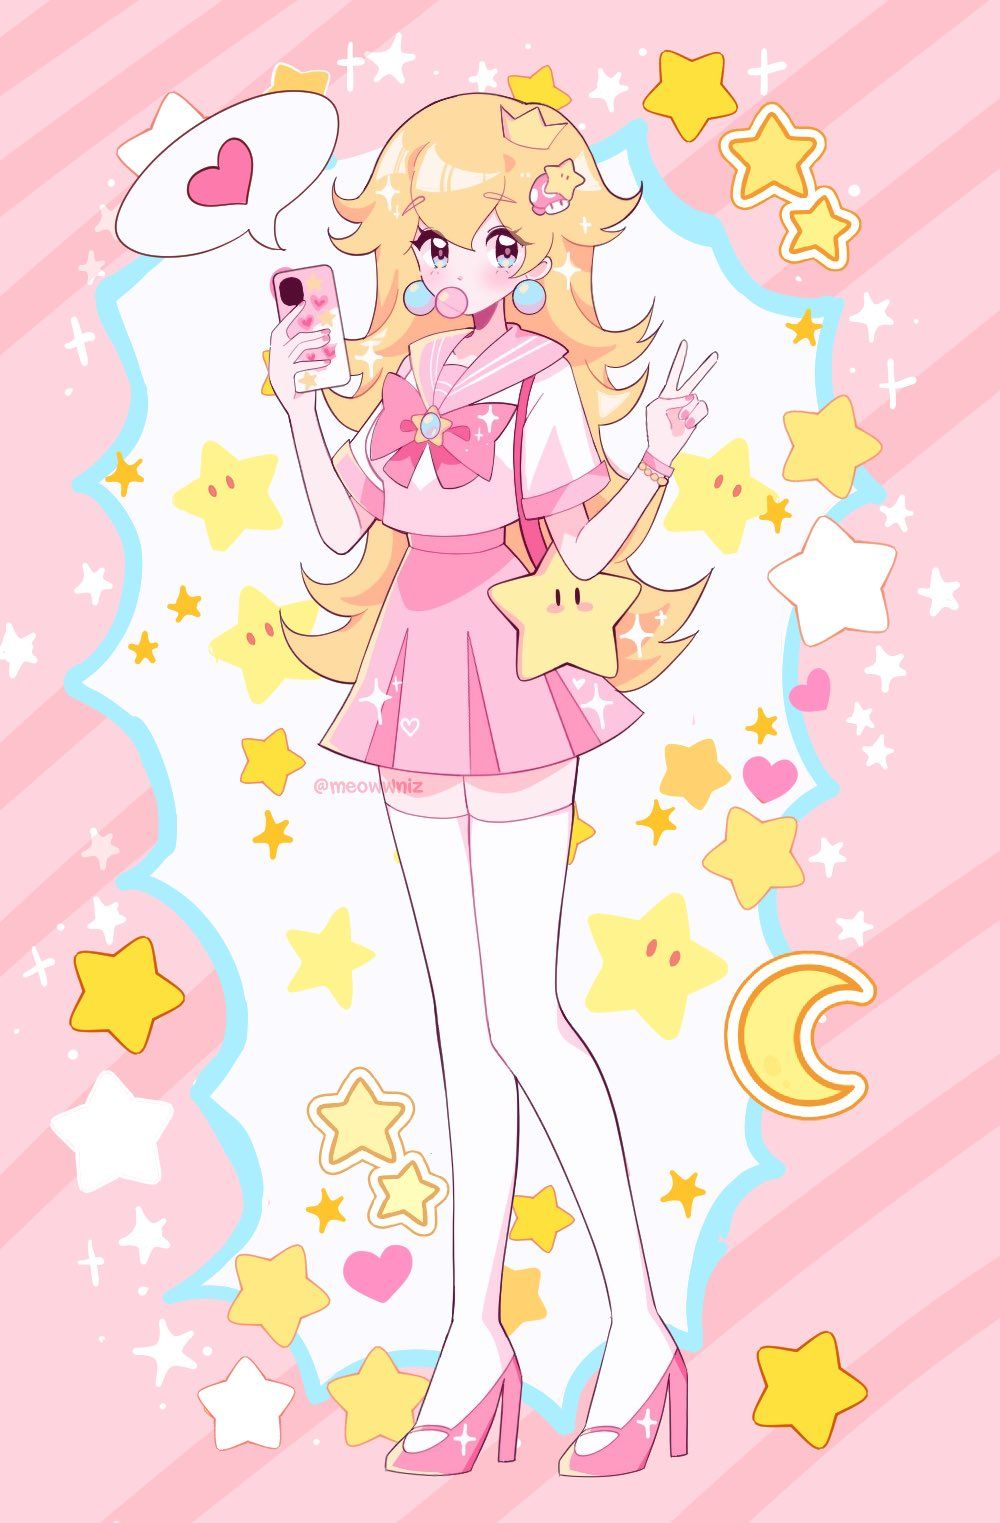 princess peach and starman (mario) drawn